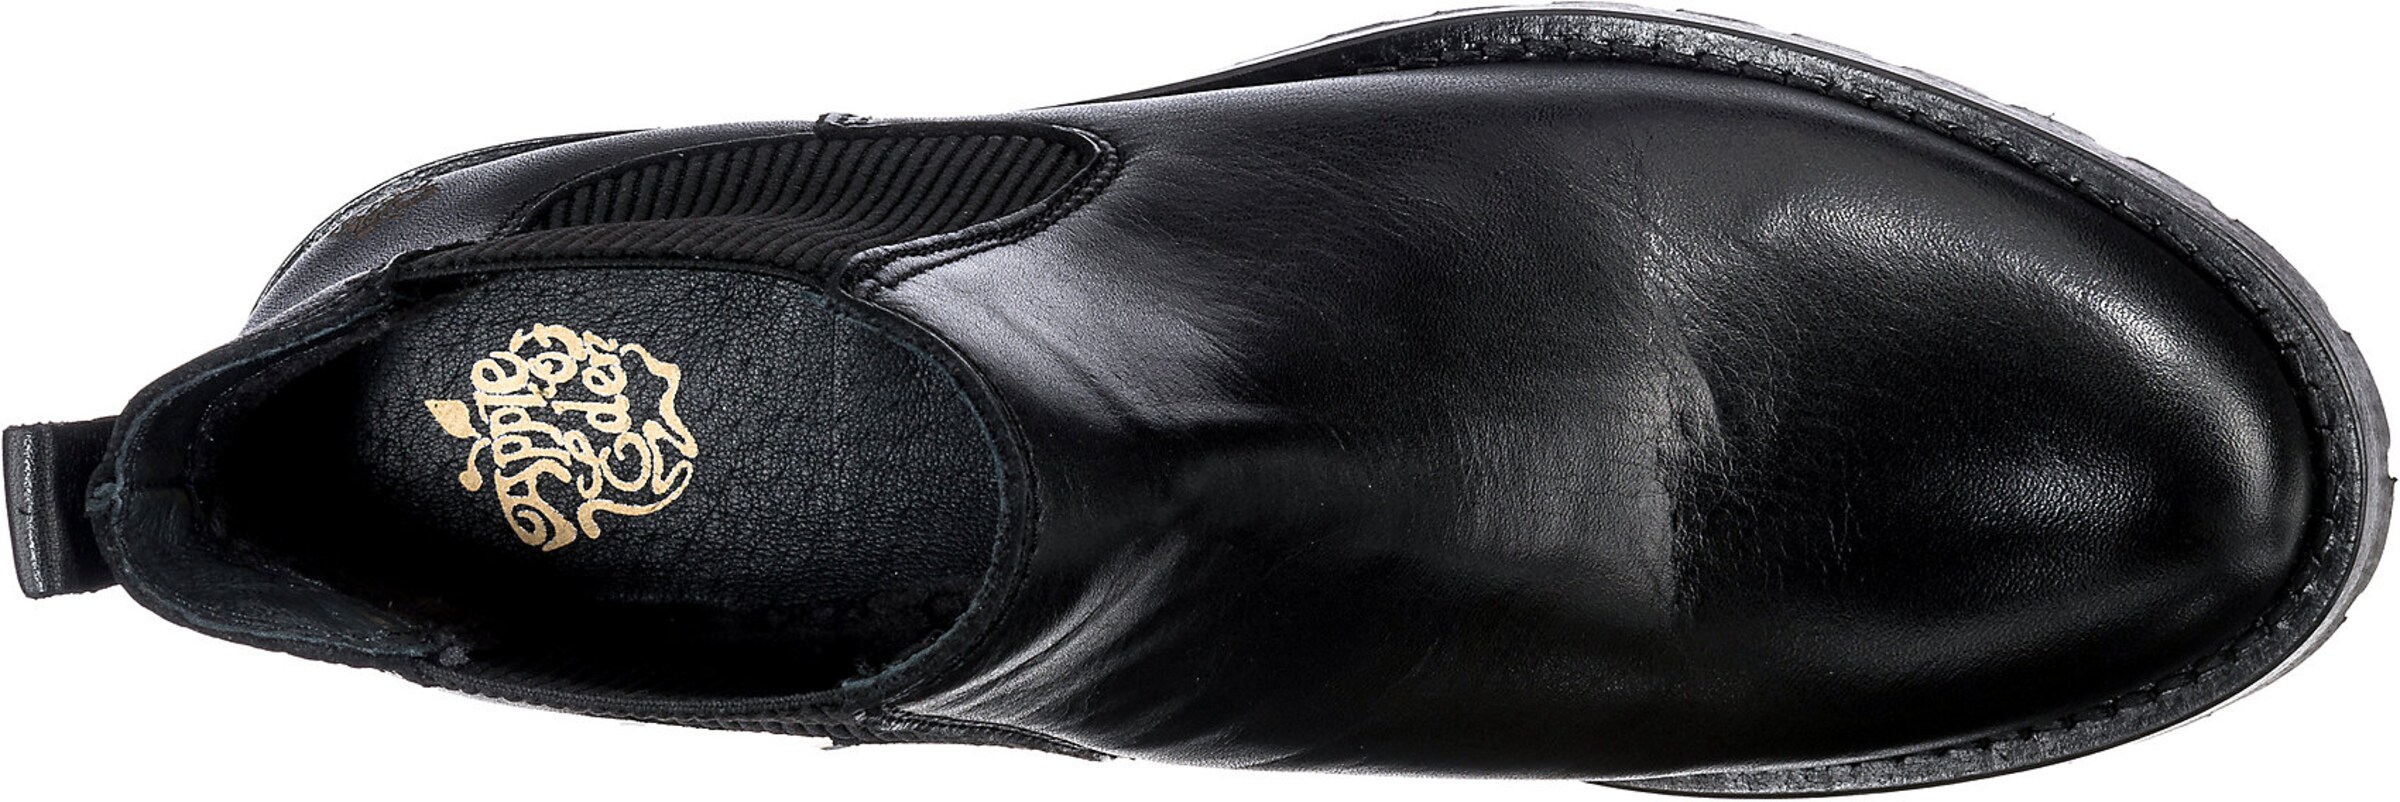 Chaussures Chelsea Boots Monika Apple of Eden en Noir 